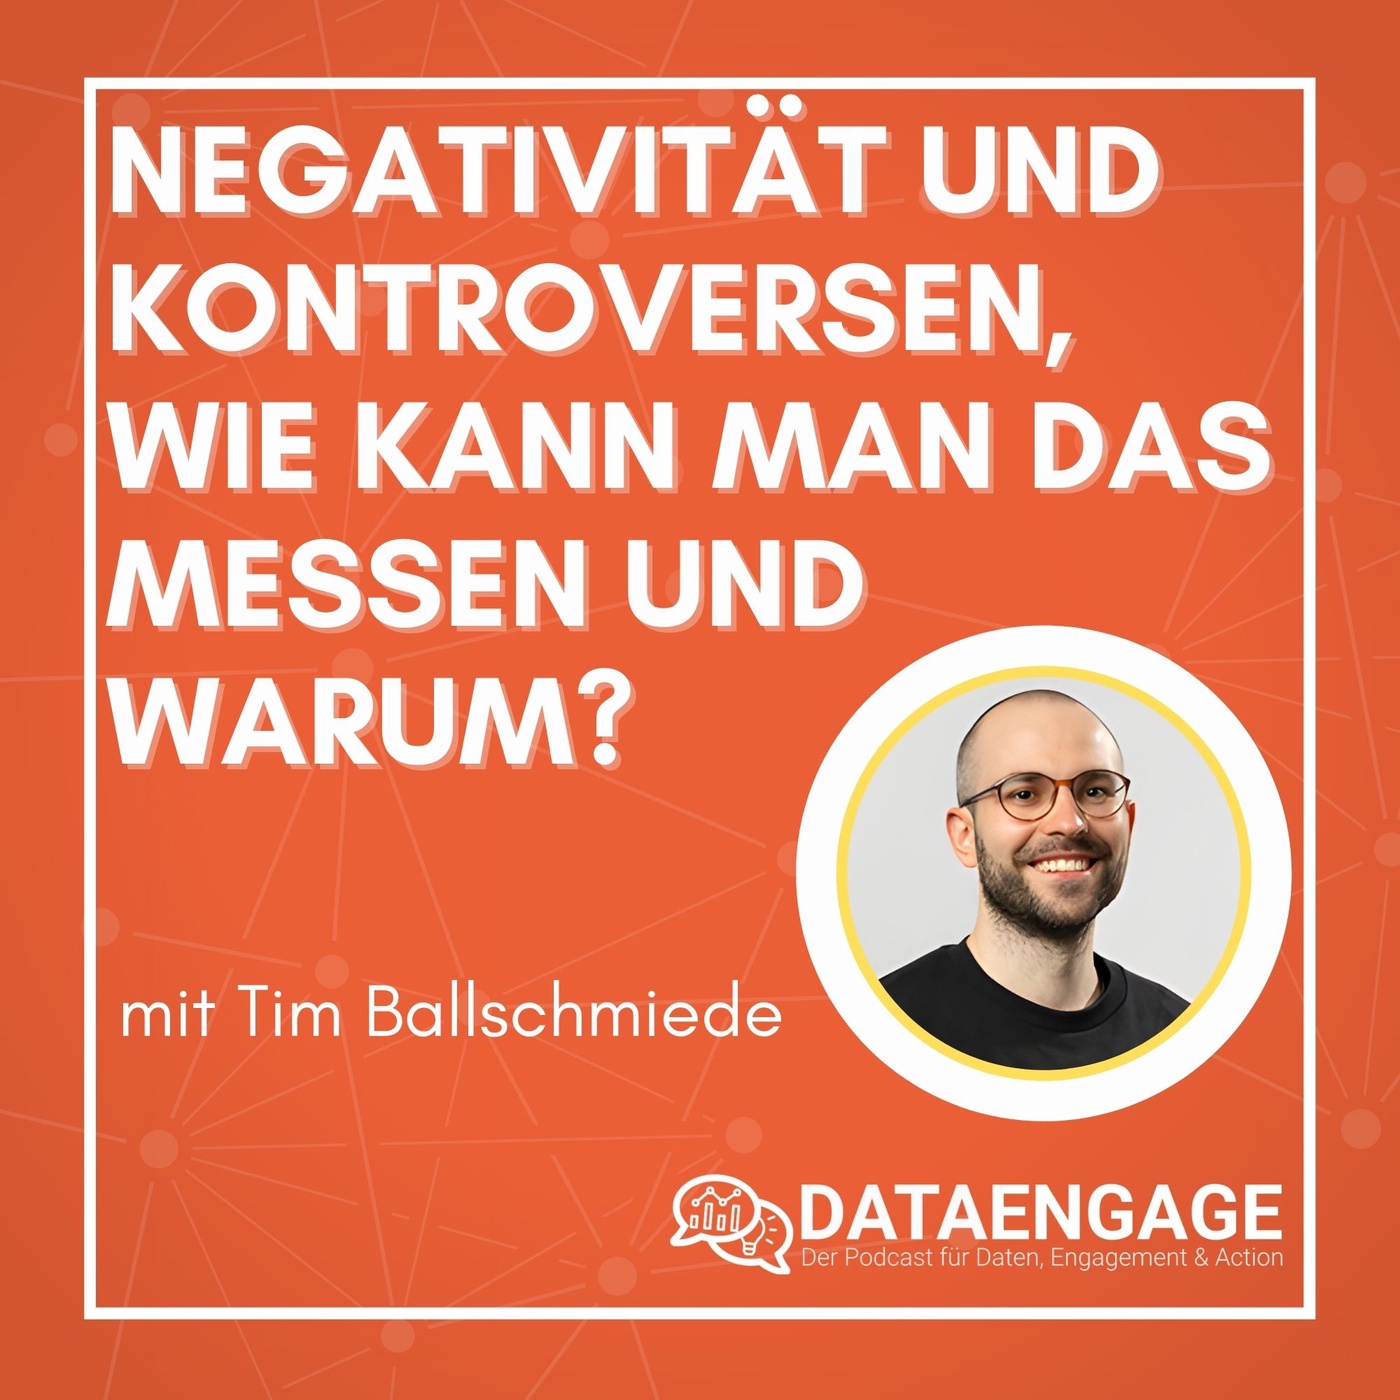 Negativität und Kontroversen, wie kann man das messen und warum? - mit Tim Ballschmiede